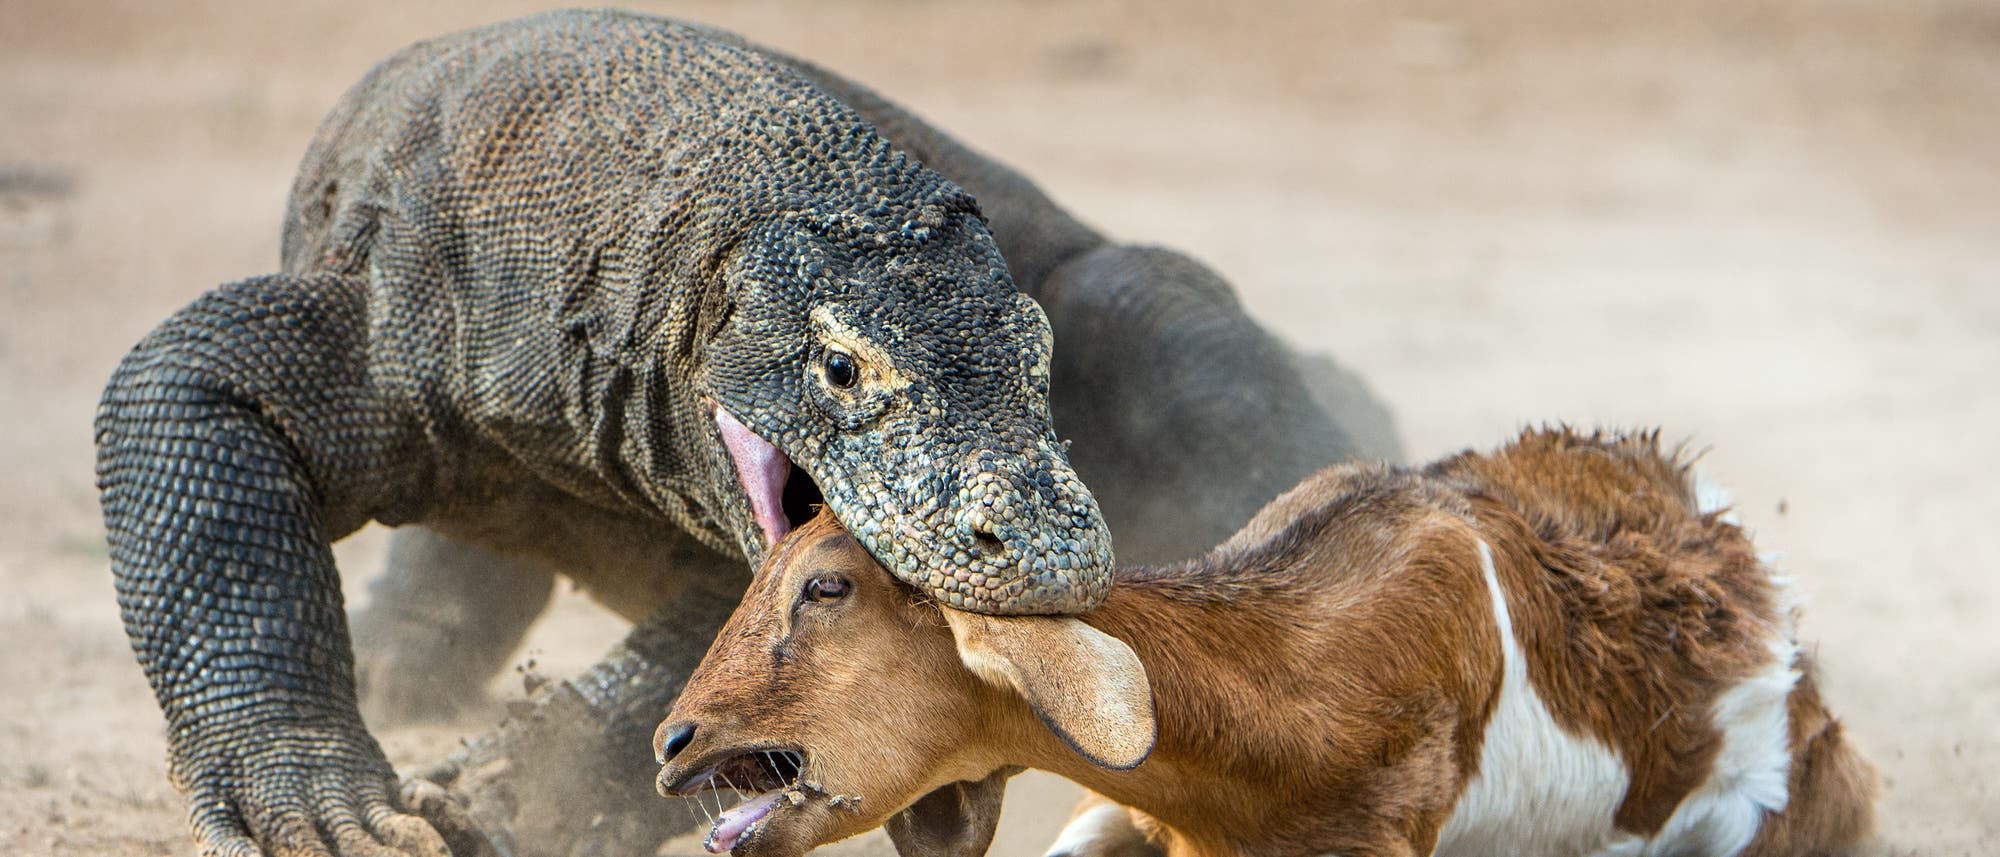 Ein grauer Komodowaran beißt in den Kopf einer braunweißen Ziege, der diese Attacke überhaupt nicht gefällt.